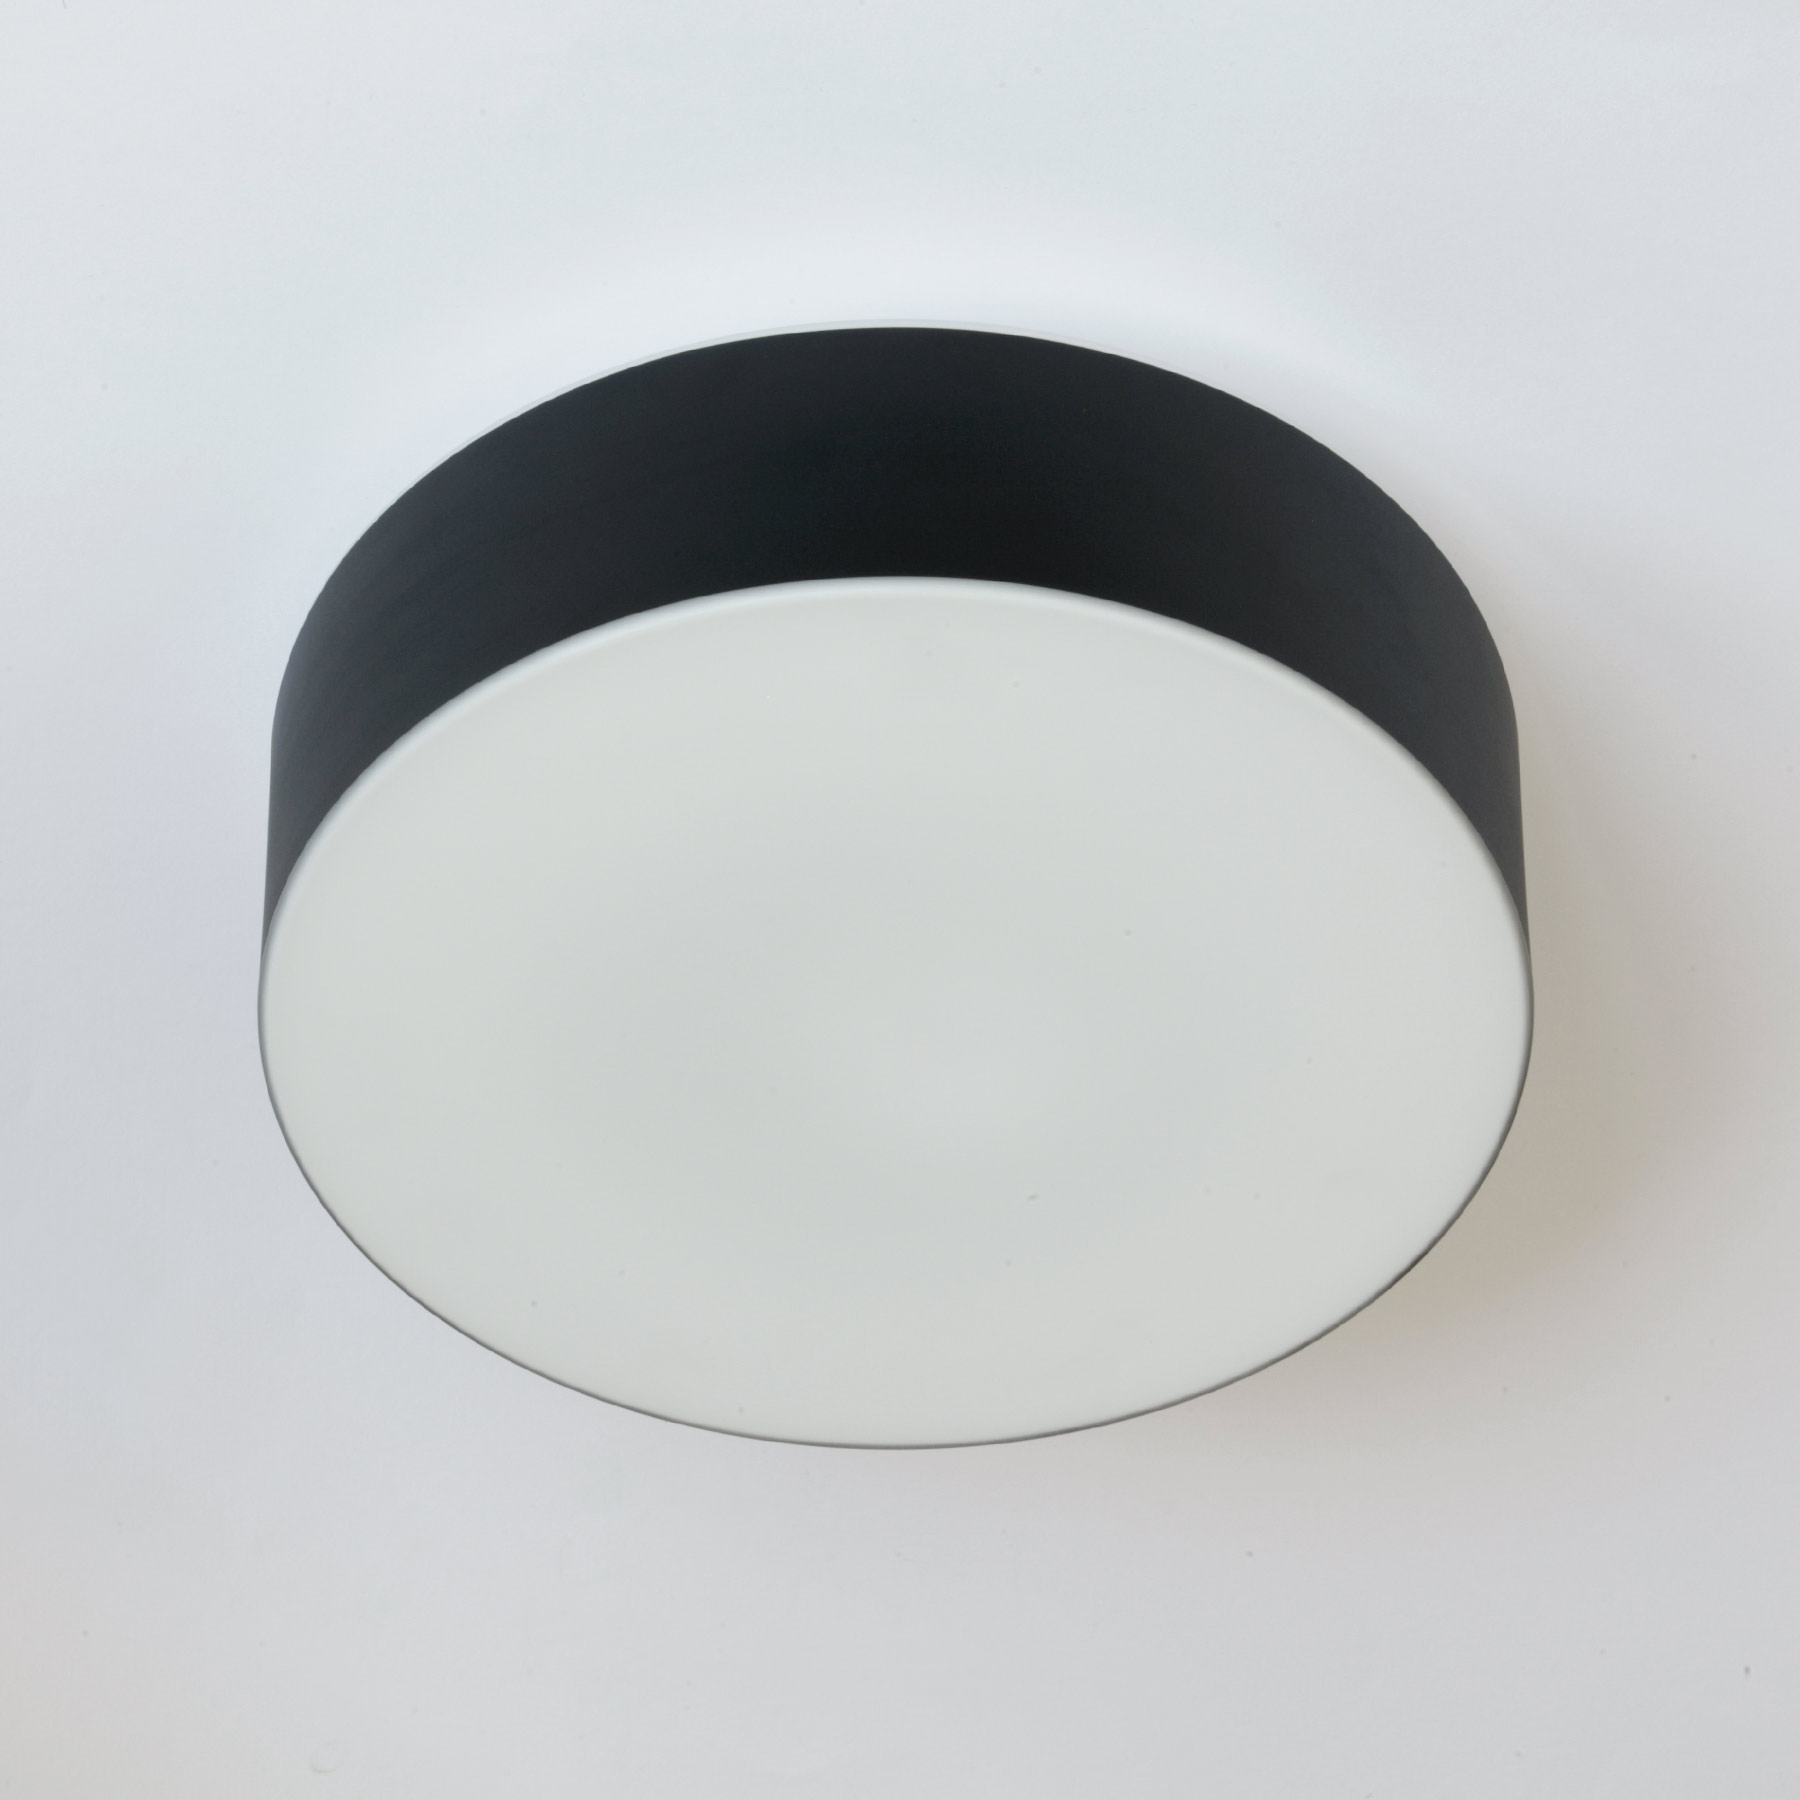 Runde Opalglas-Deckenleuchte ERIK mit schwarzer Blende, Ø 34 bis 54 cm: Elegante Glas-Deckenleuchte mit schwarzem Rand (hier Größe S mit 34 cm Durchmesser)